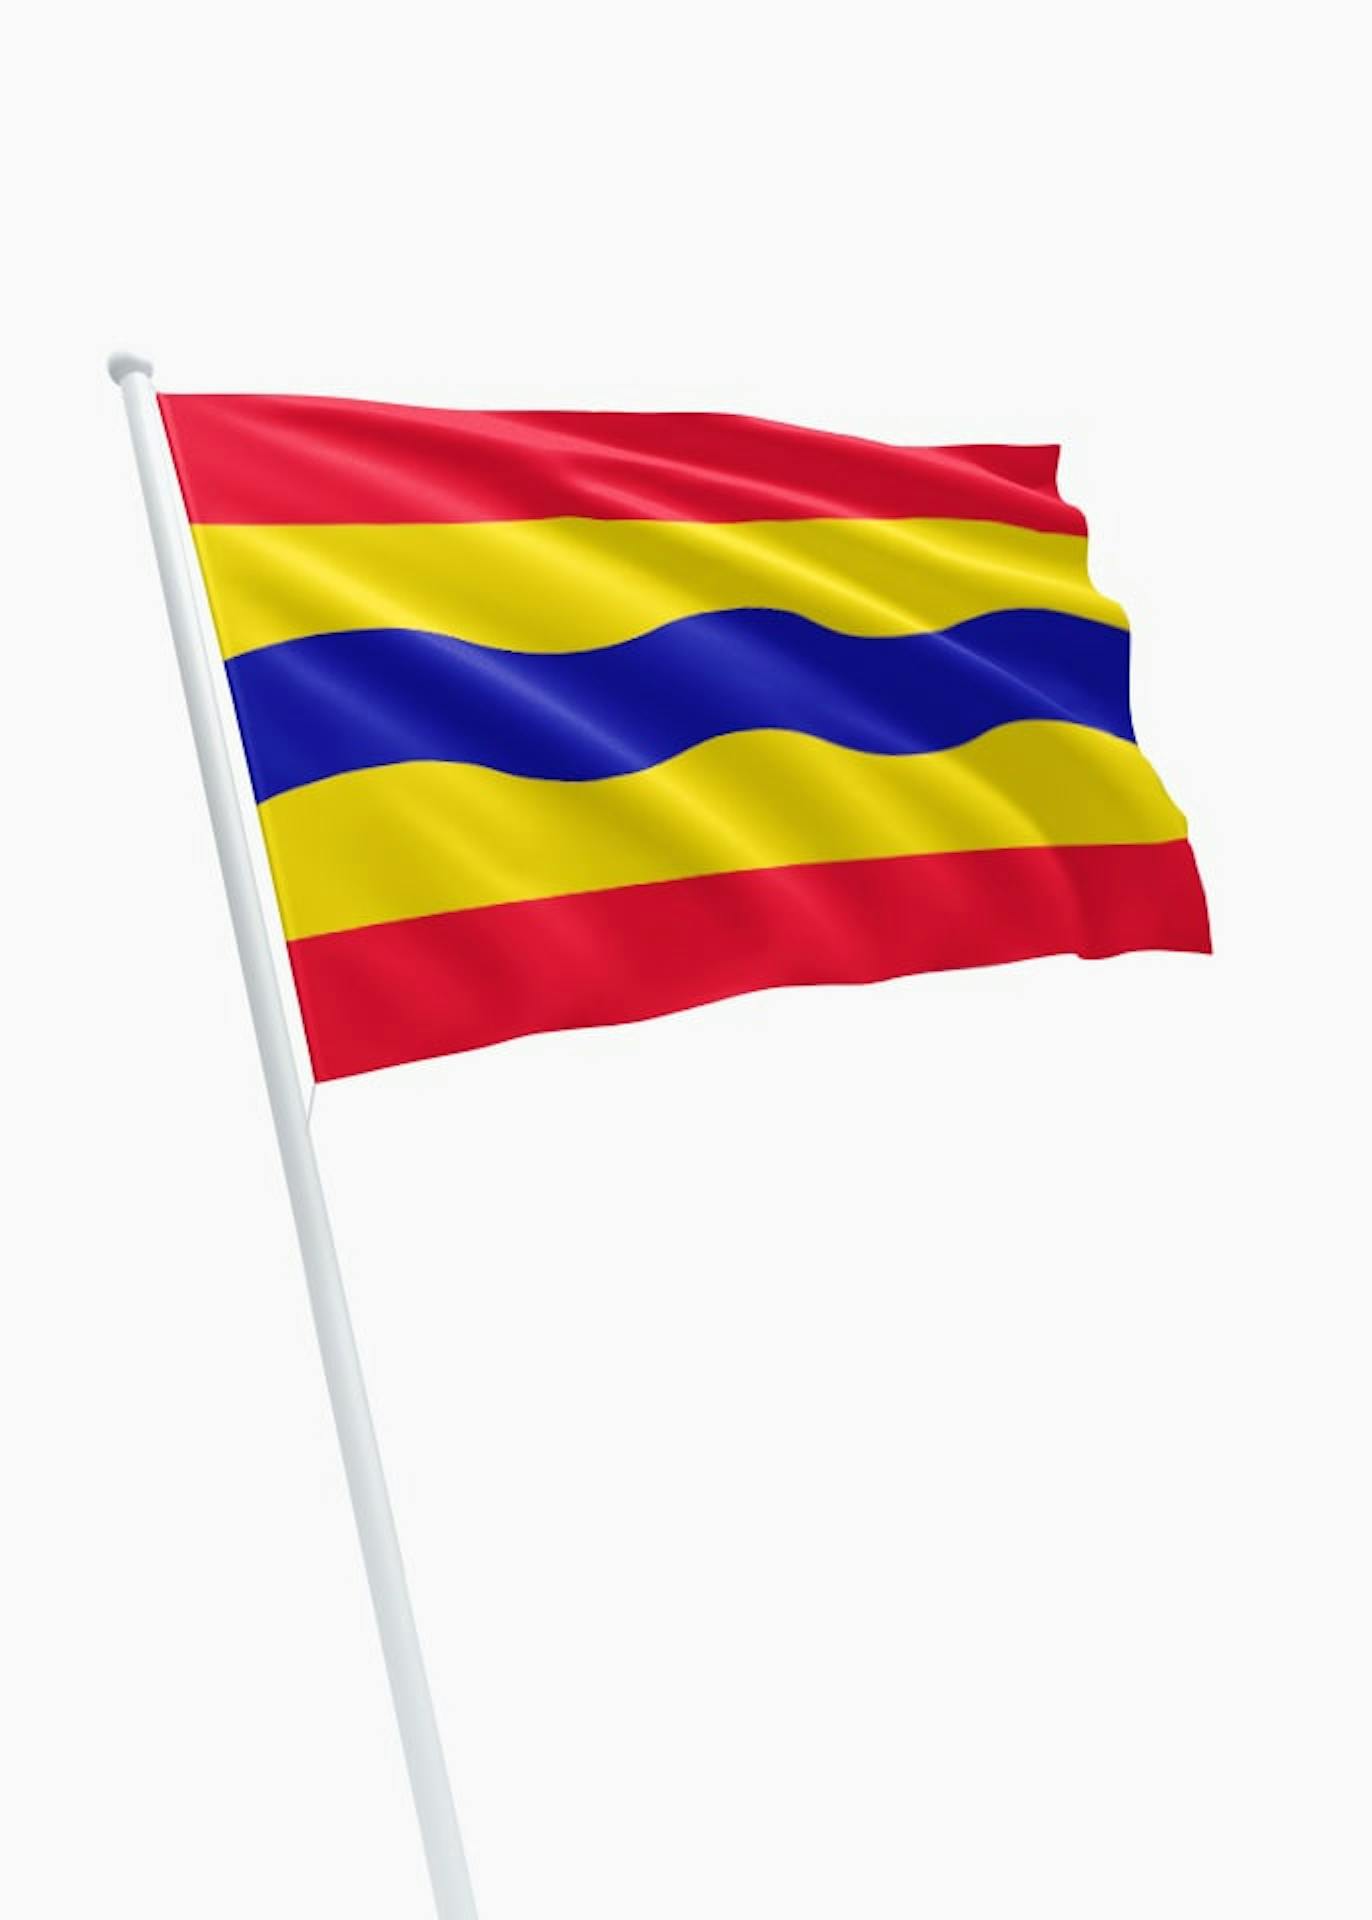 Nationale volkstelling stormloop merknaam Vlag van de provincie Overijssel bestellen? Deze kleurrijke rood-geel-blauw  vlag bestel je eenvoudig bij ons! - DVC